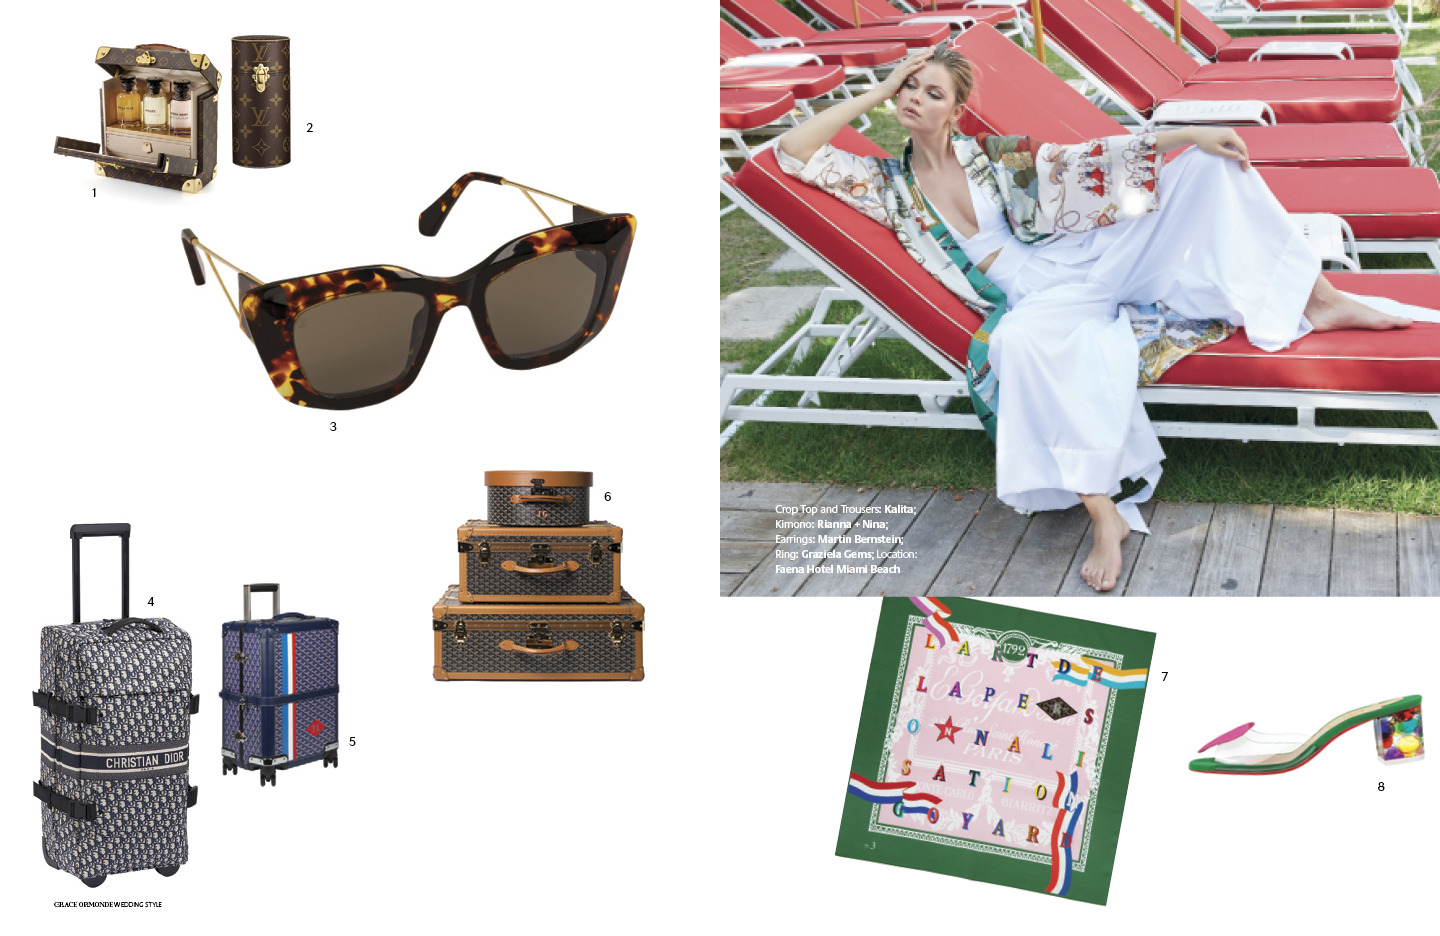 Trolleys for Travel  Goyard luggage, Handbag care, Travel chic